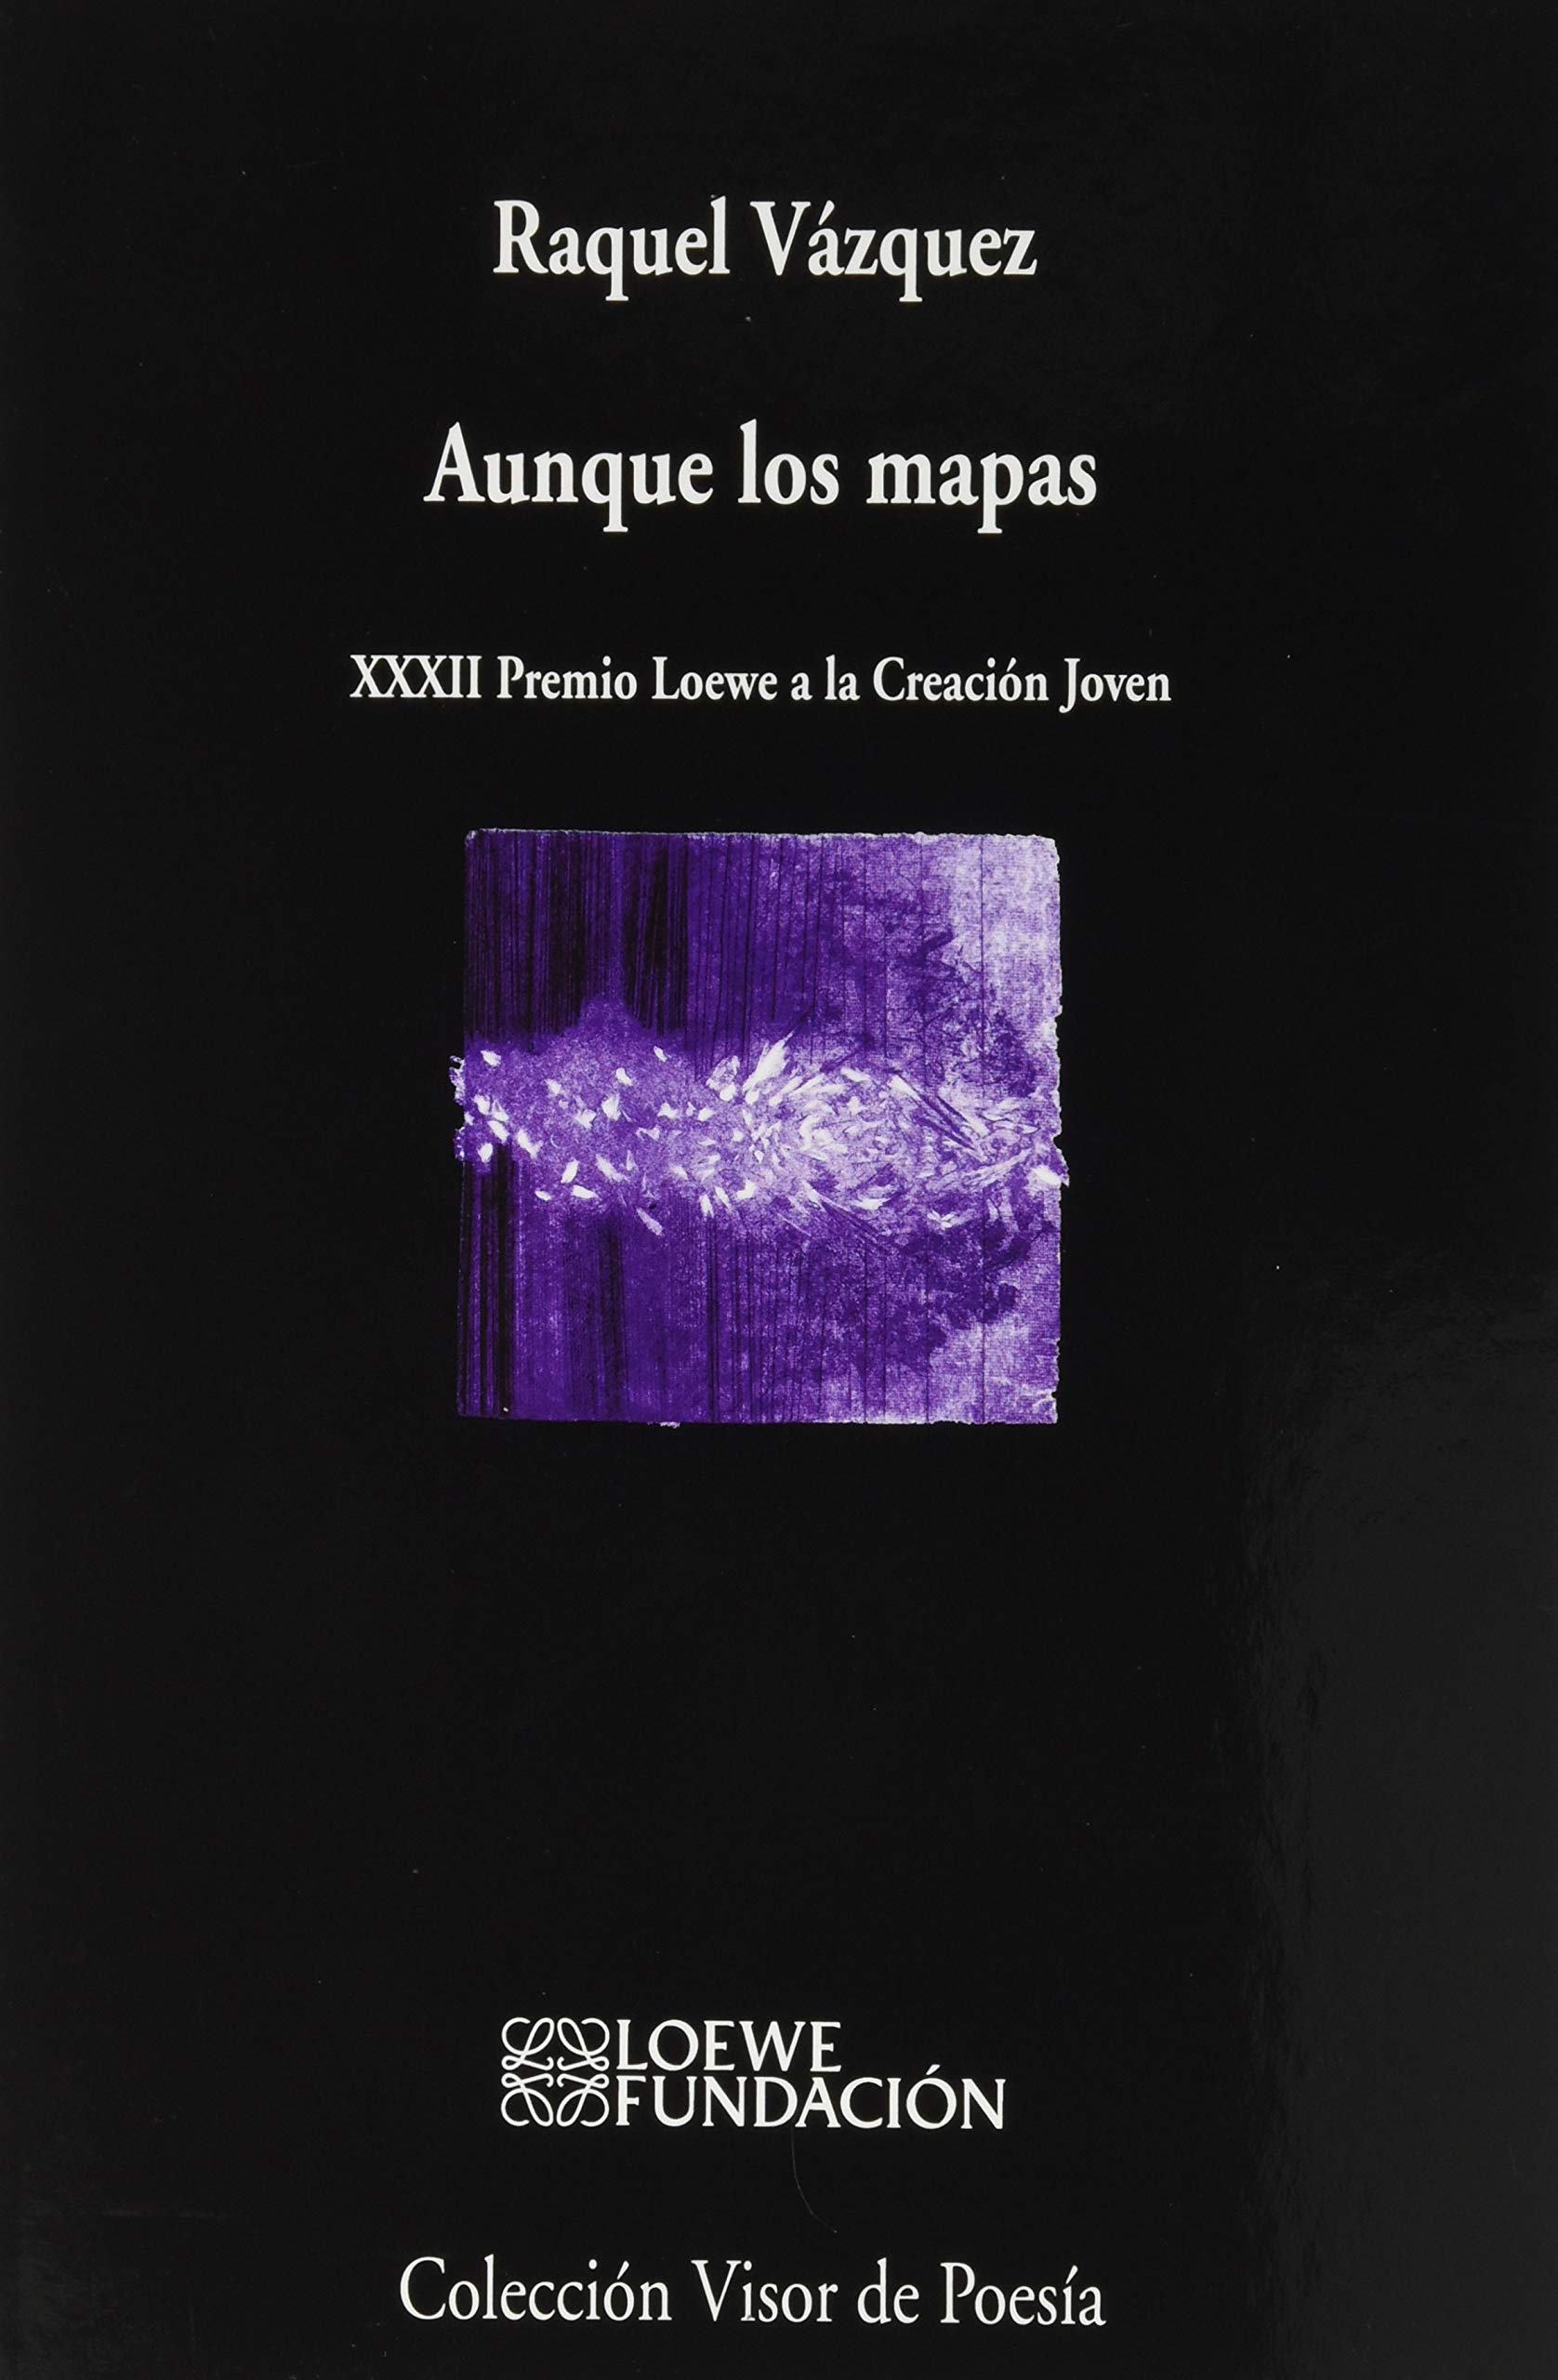 5 poemas de Aunque los mapas, de Raquel Vázquez